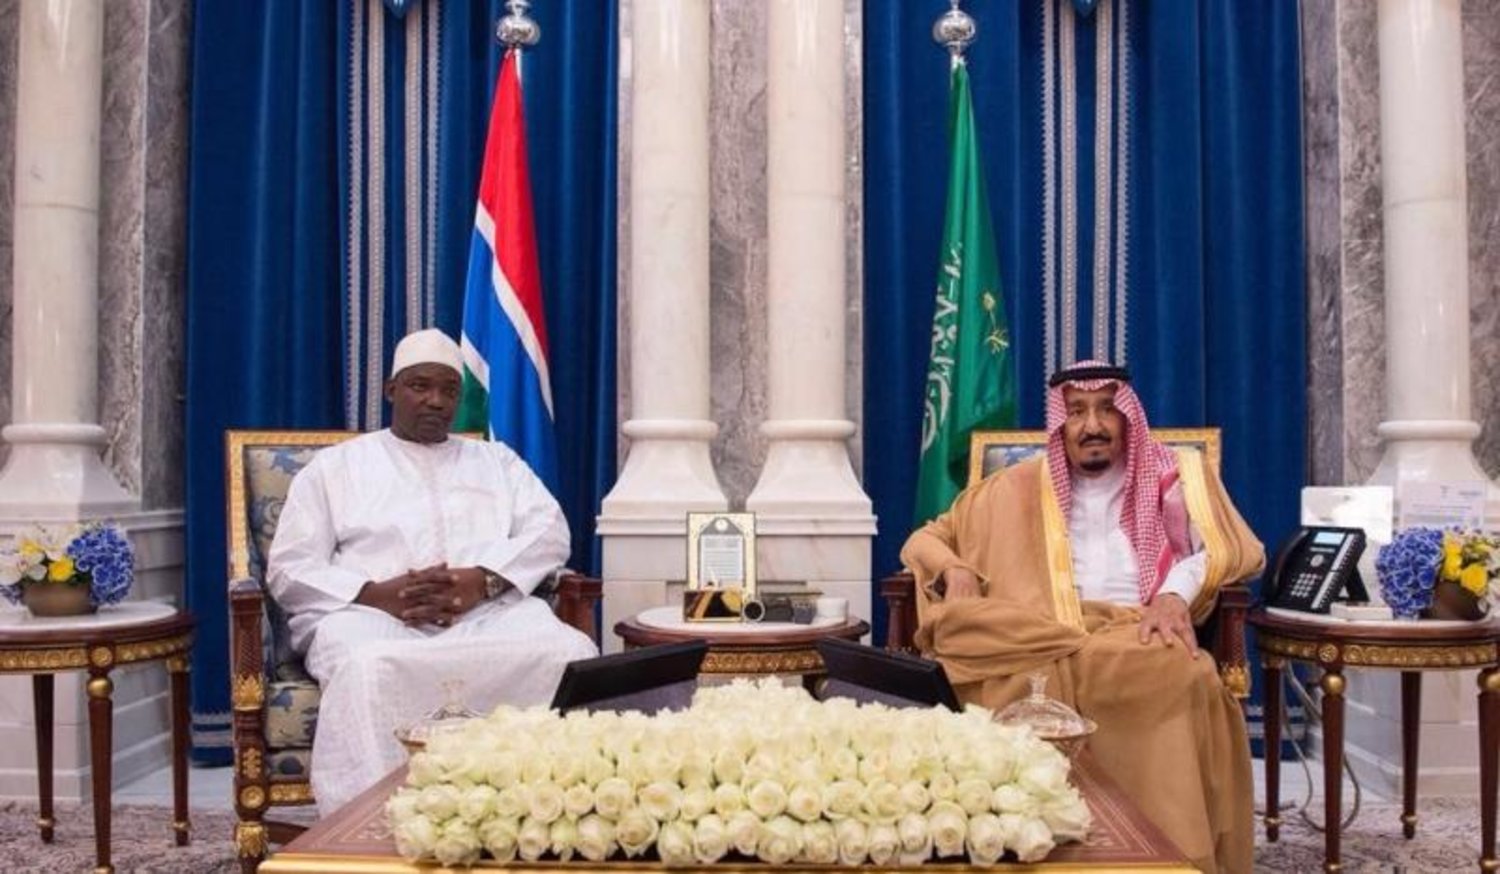 خادم الحرمين الشريفين الملك سلمان بن عبد العزيز خلال جلسة مباحثات مع الرئيس الجامبي آداما بارو (واس)